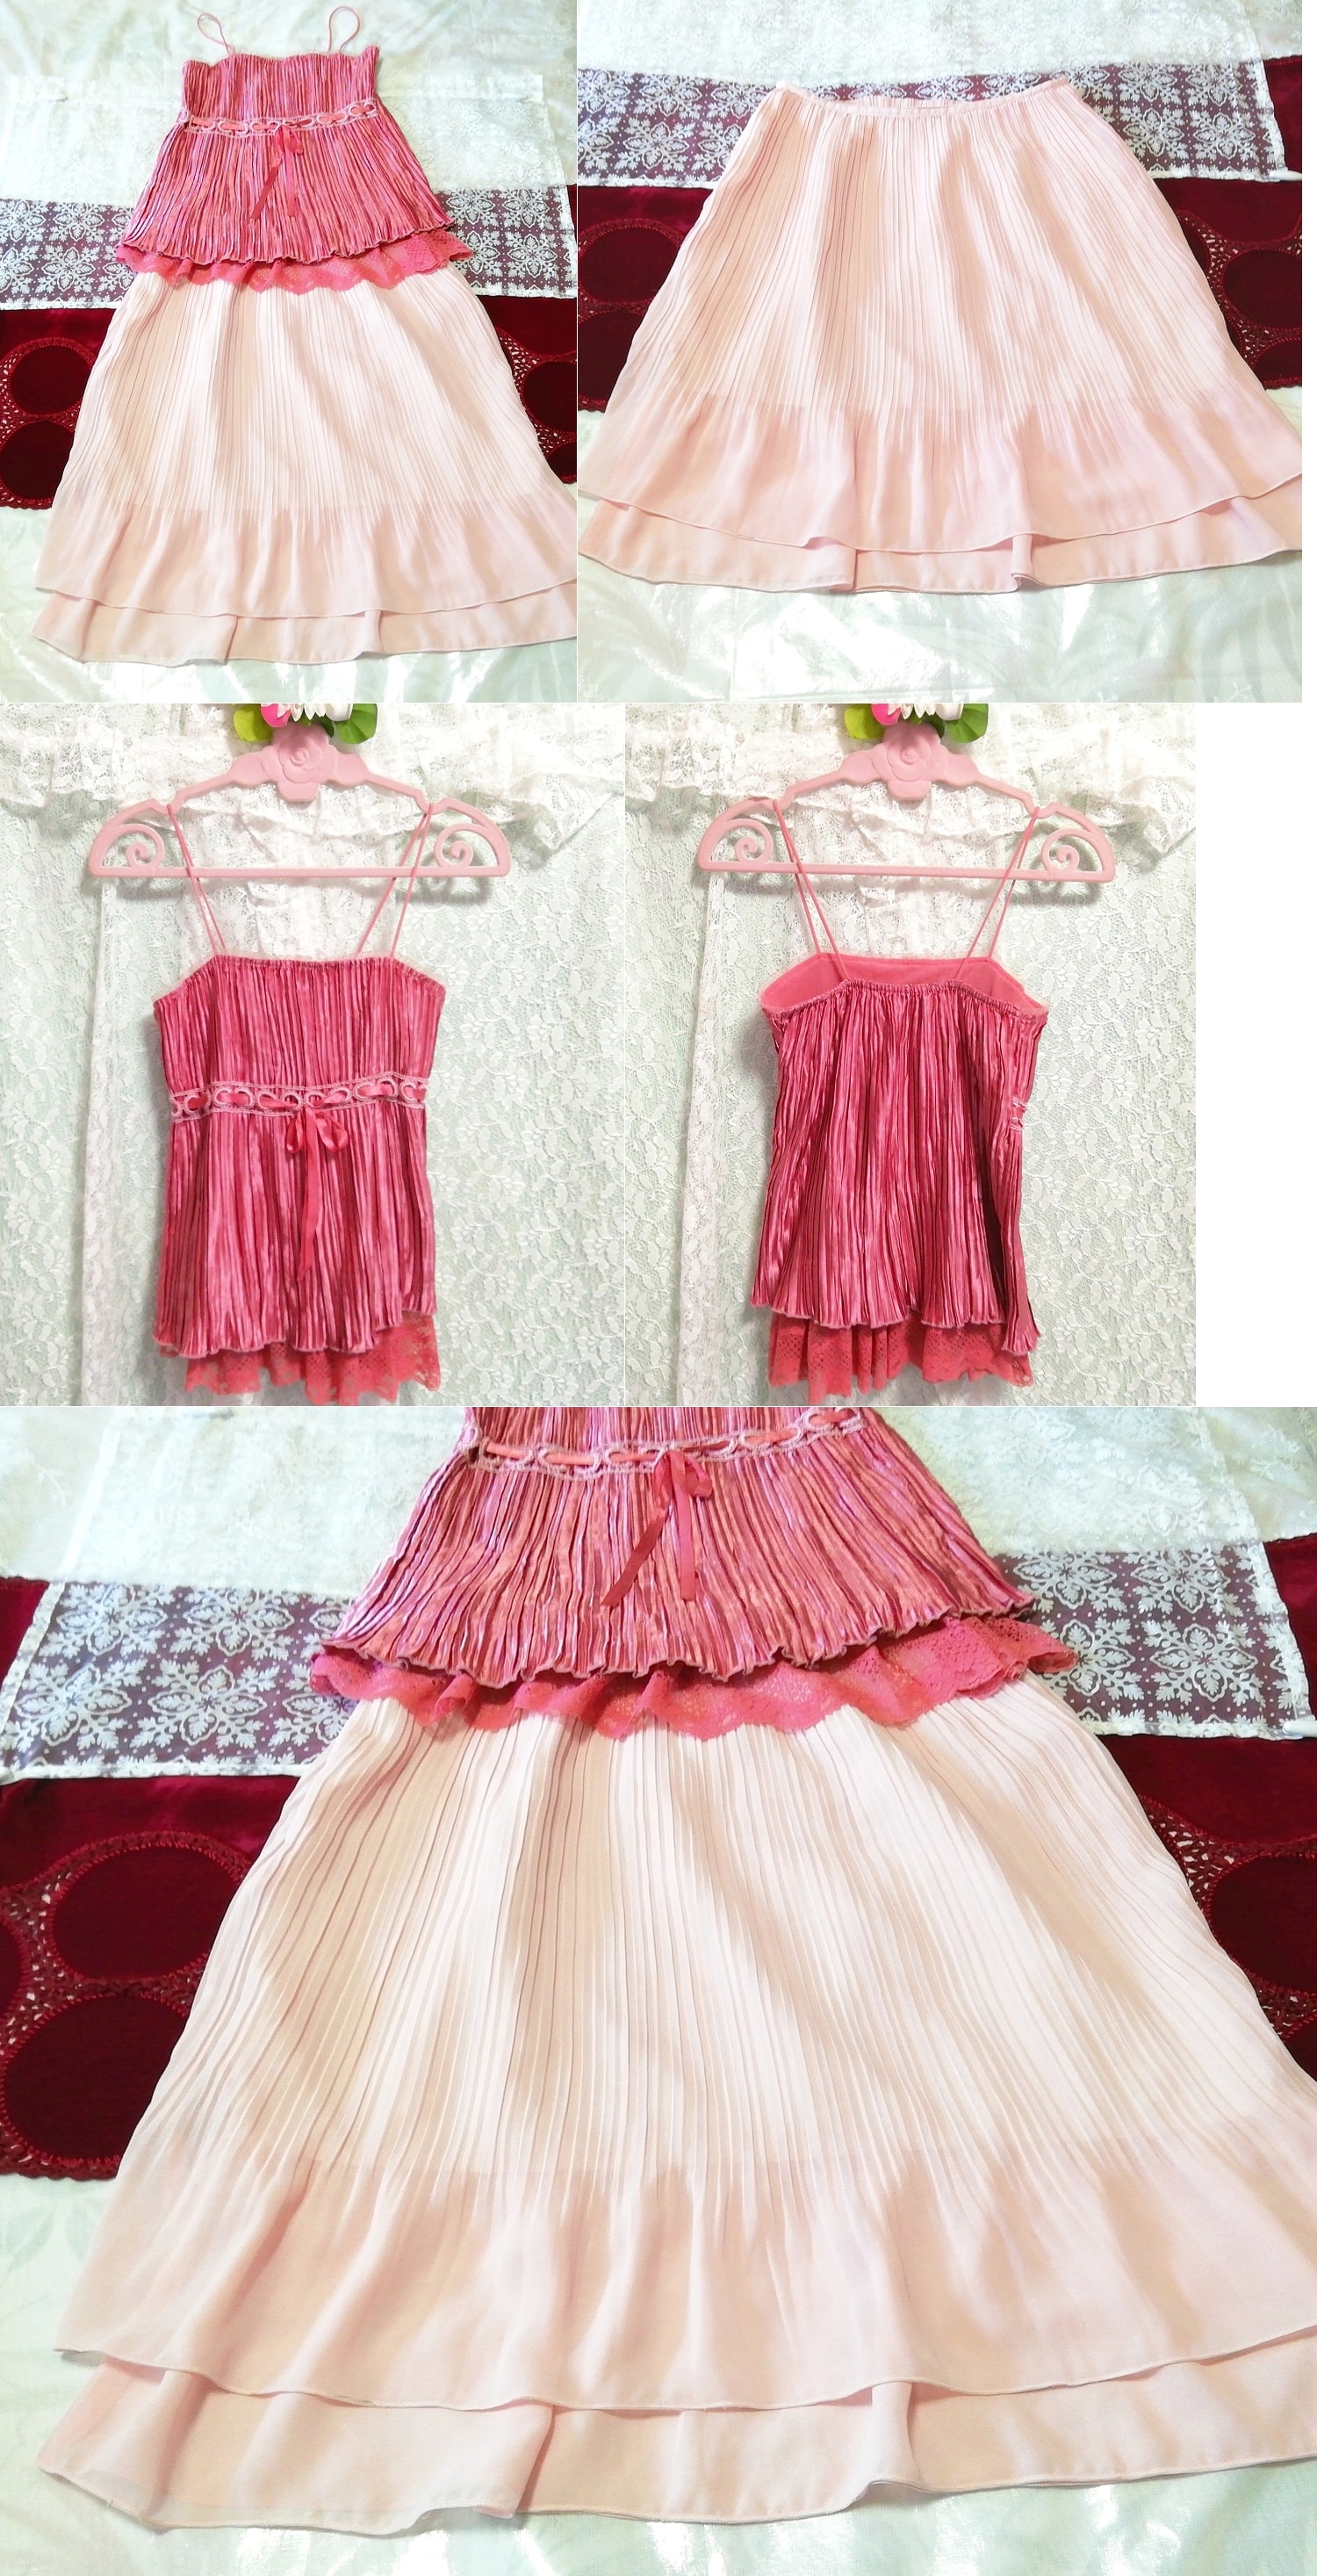 粉色缎面蕾丝吊带背心睡衣粉色雪纺百褶裙 2 件, 时尚, 女士时装, 睡衣